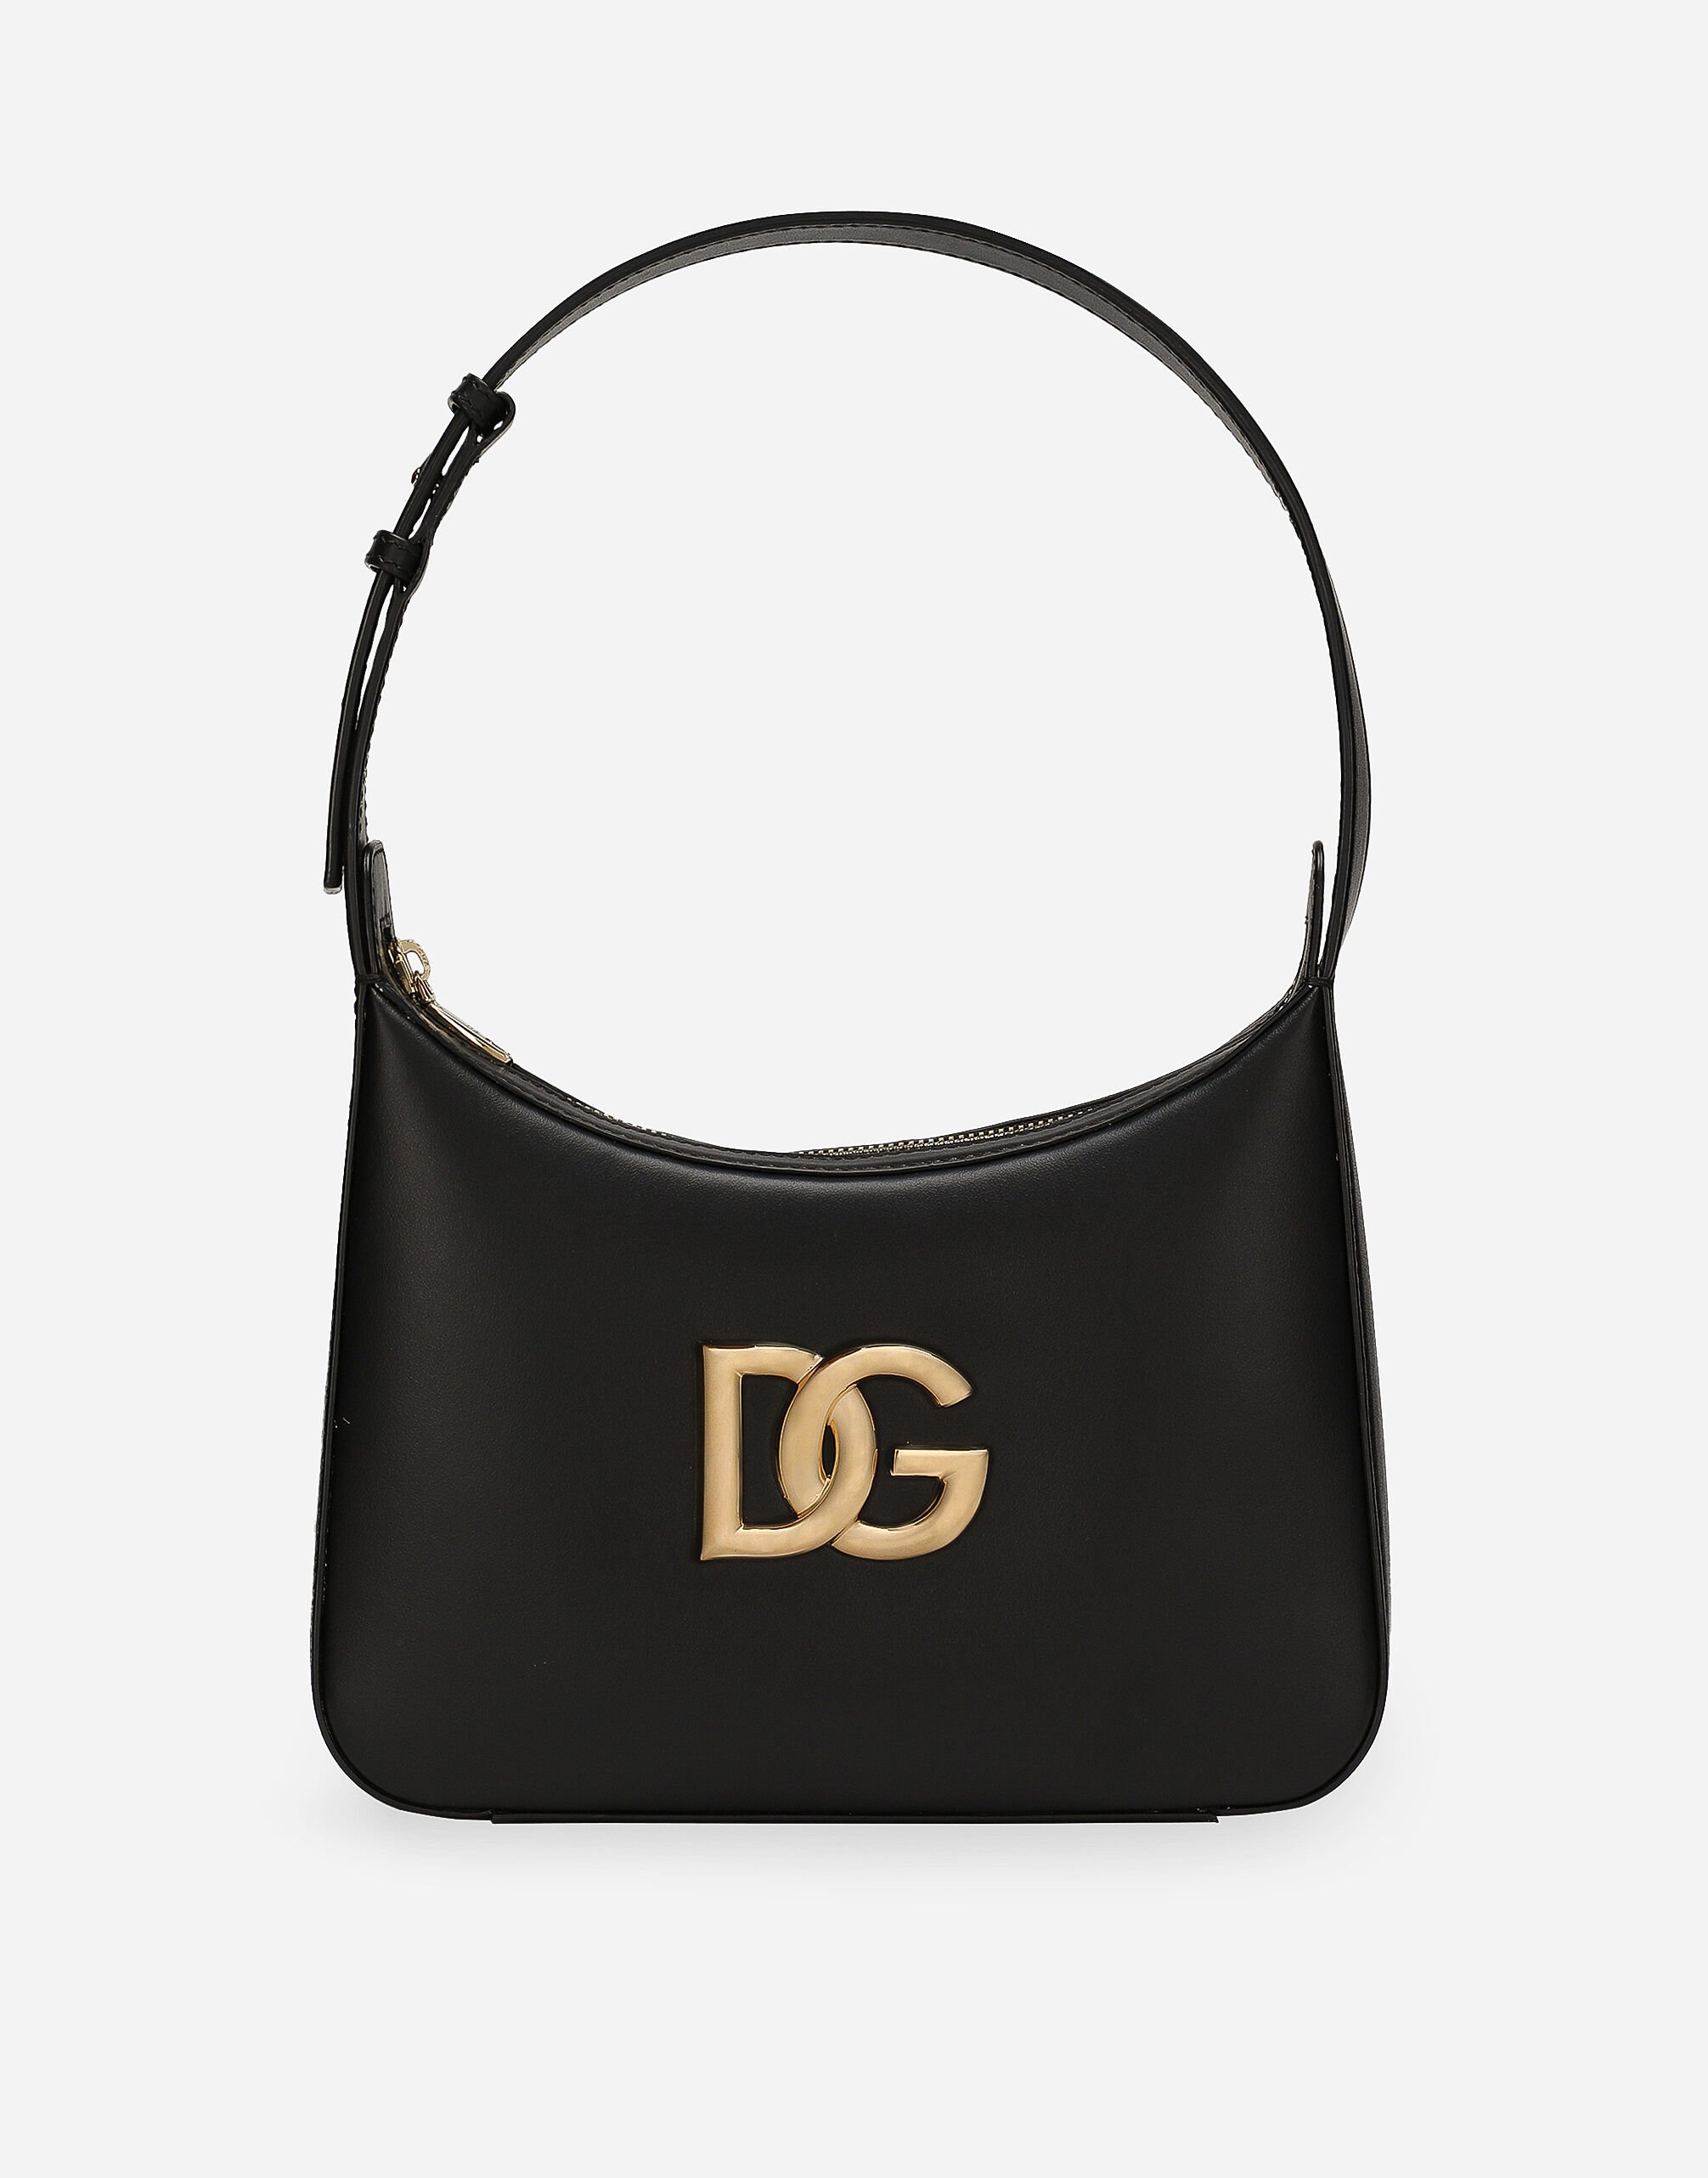 Dolce & Gabbana 3.5 shoulder bag Green BB6711AV893